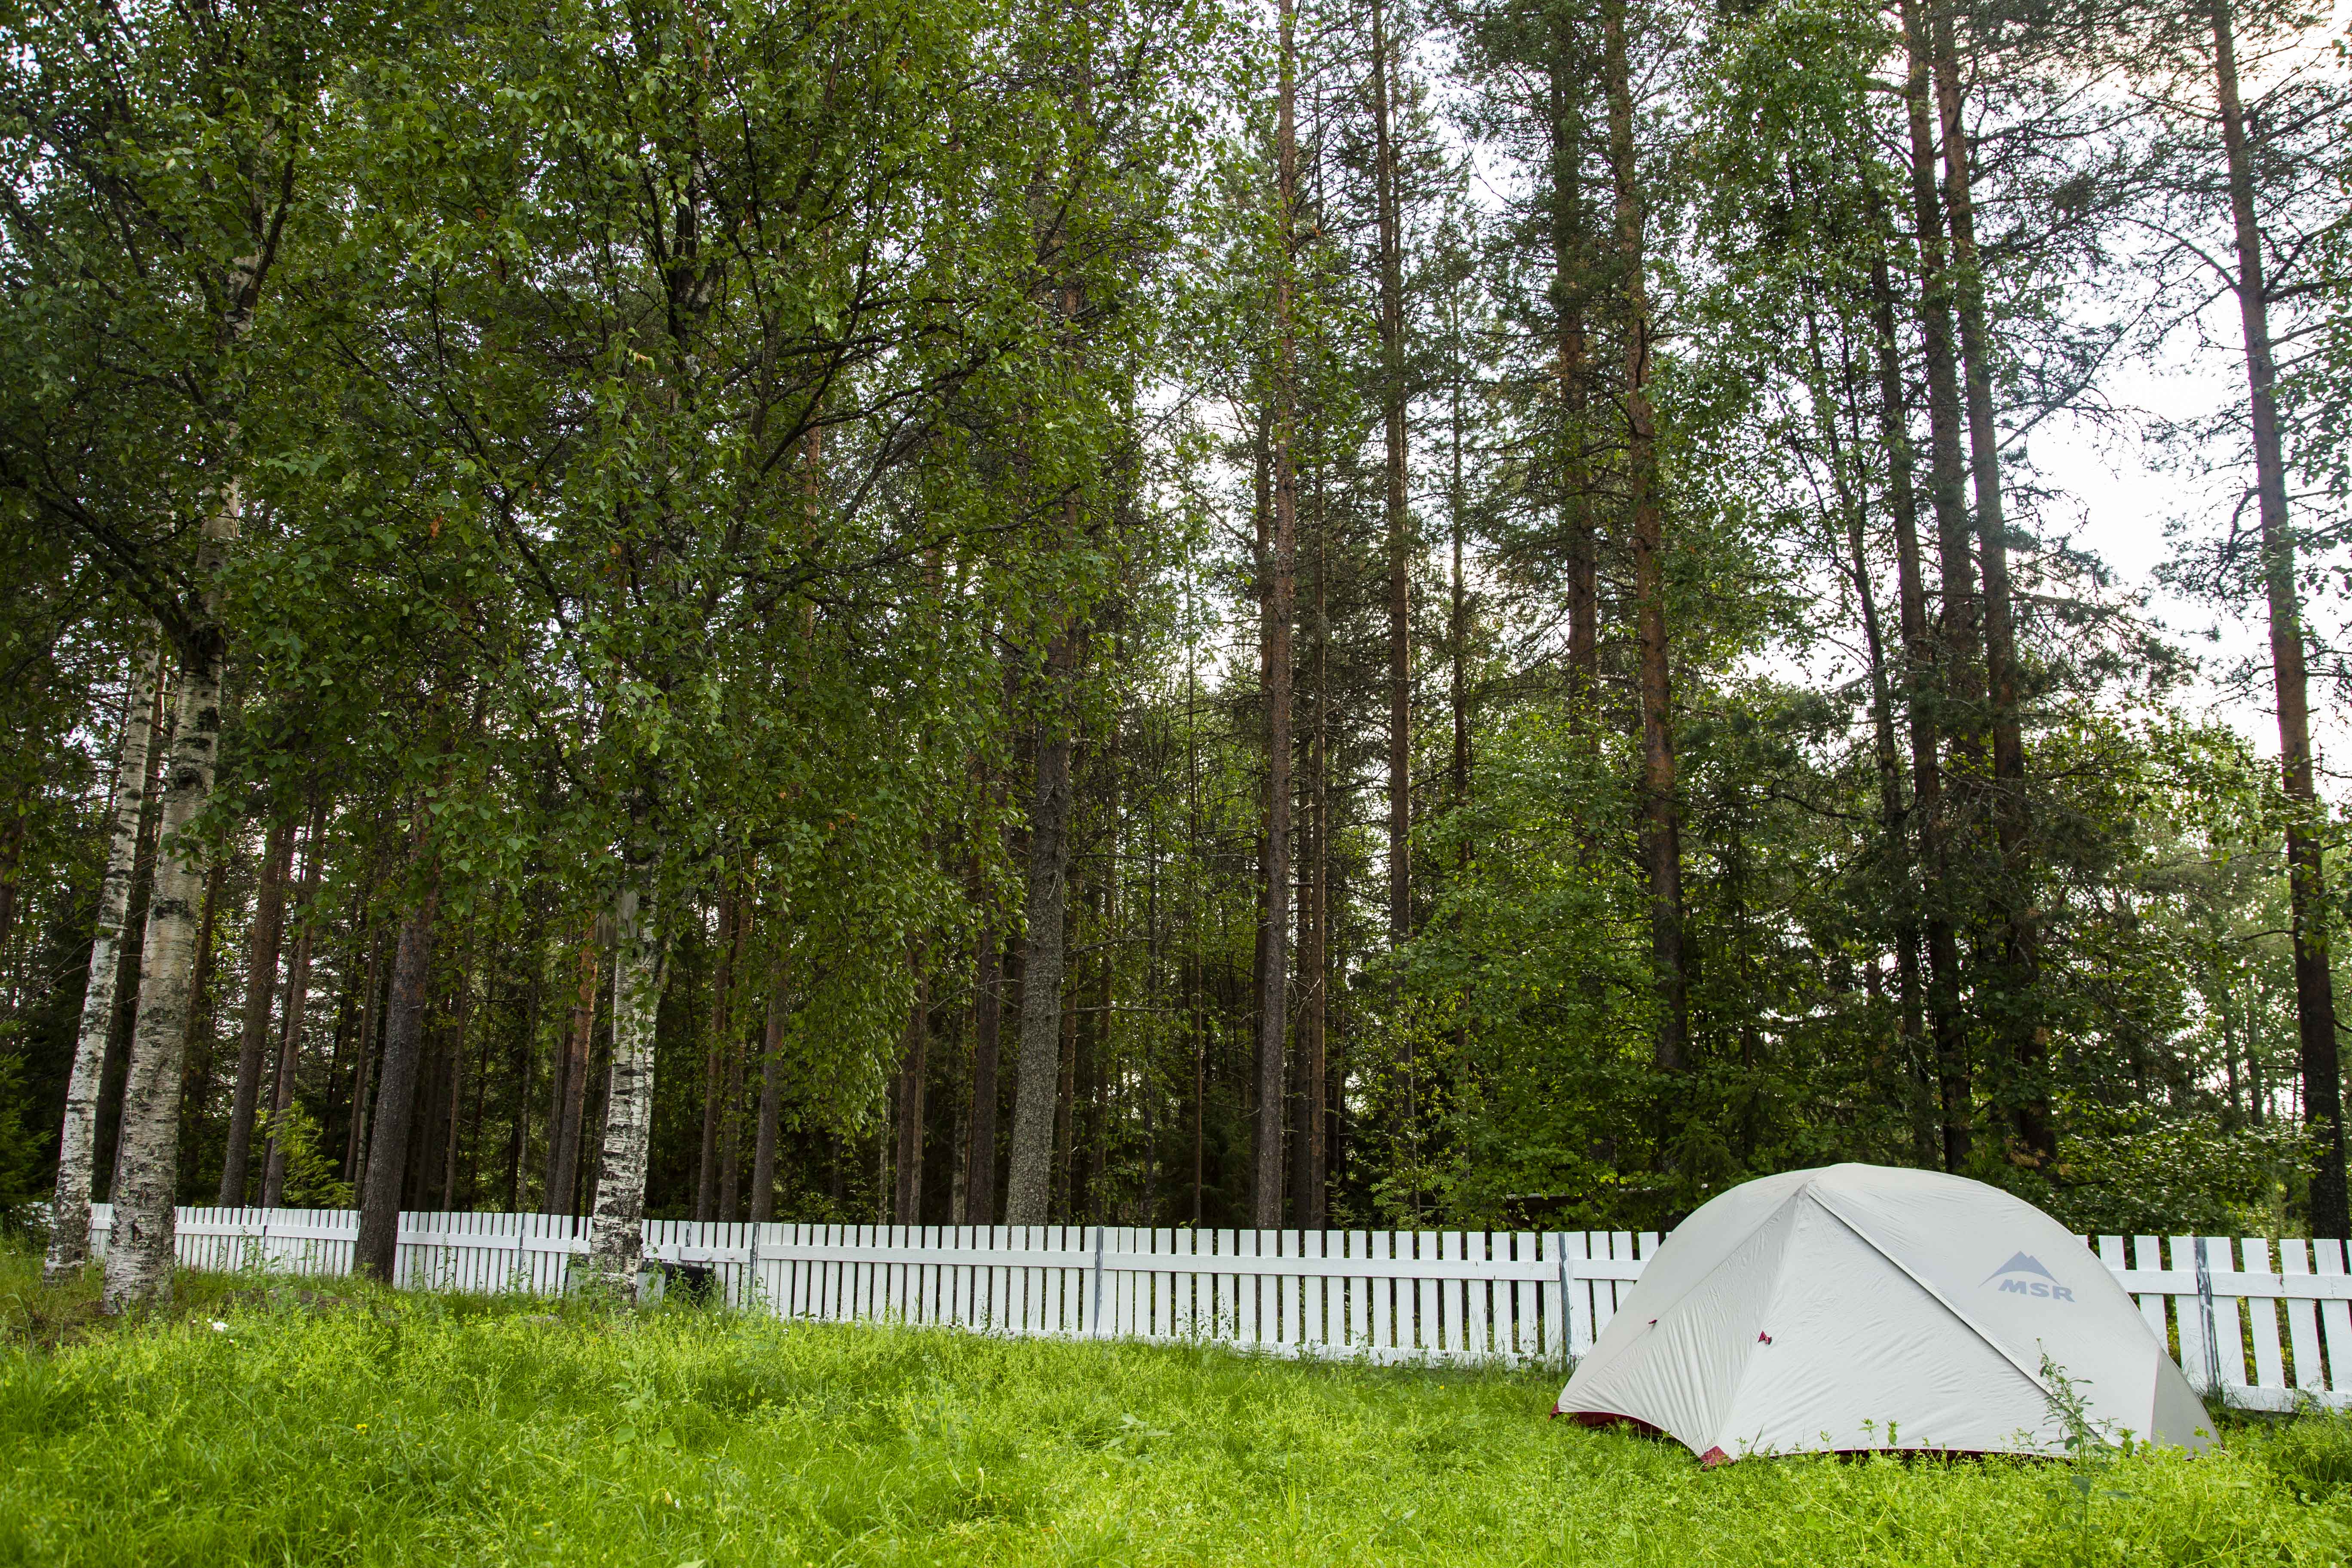 フィンランドキャンプ1泊目 キャンプ場にサウナがあって驚き キャンプ初心者向け総合情報ブログ Hyper Camp Creators